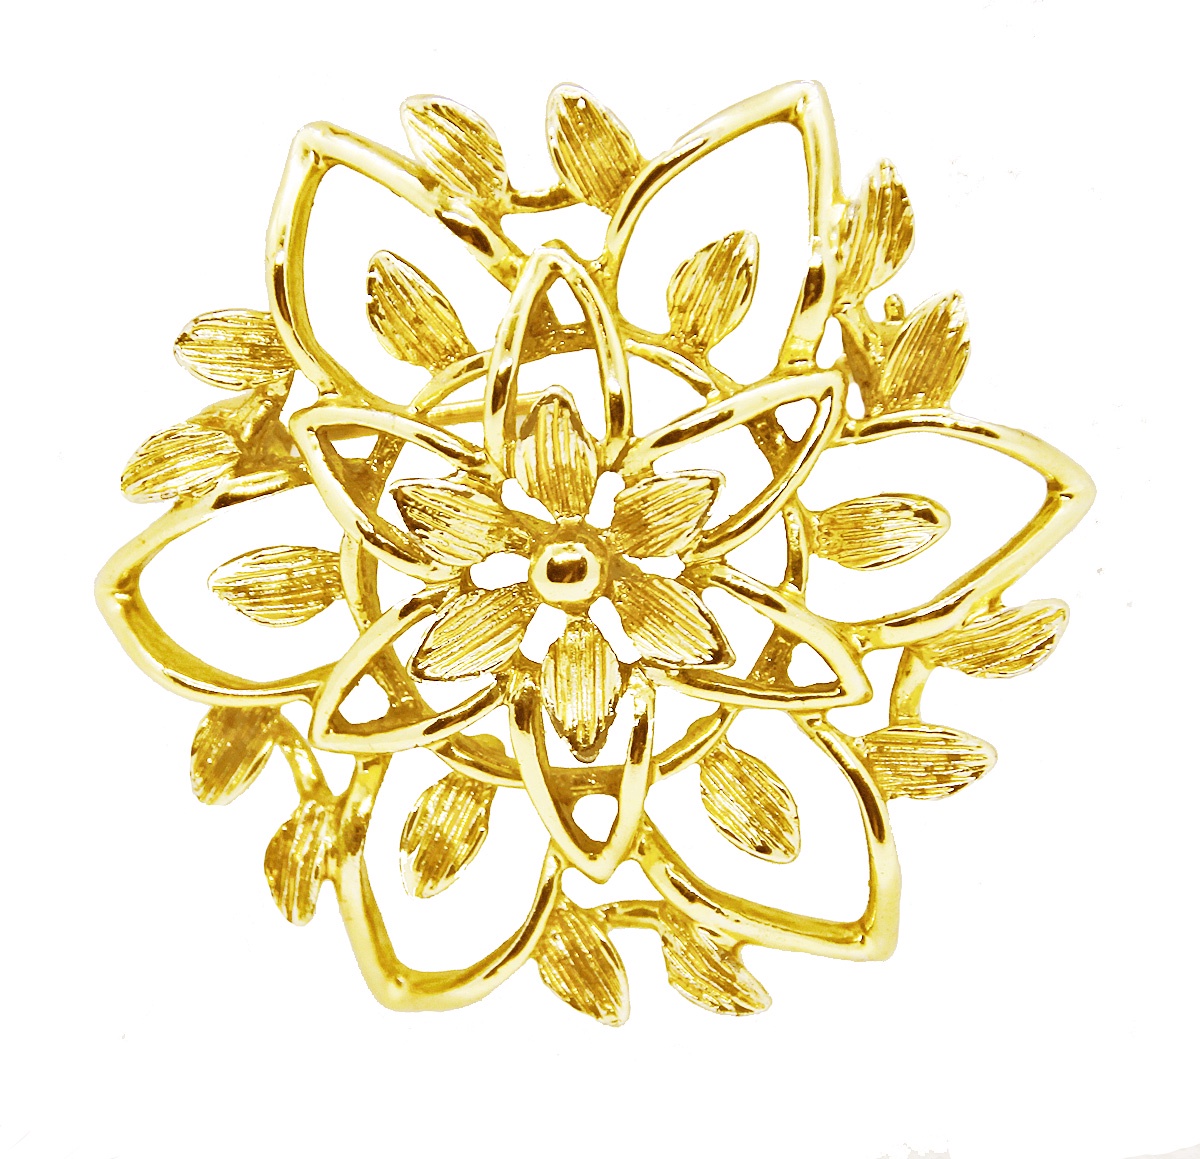 фото Брошь бижутерная Sarah Coventry "Винтажная брошь - Золотистый цветок". Канада, 1970-е годы, Ювелирный сплав, 4 см, золотой